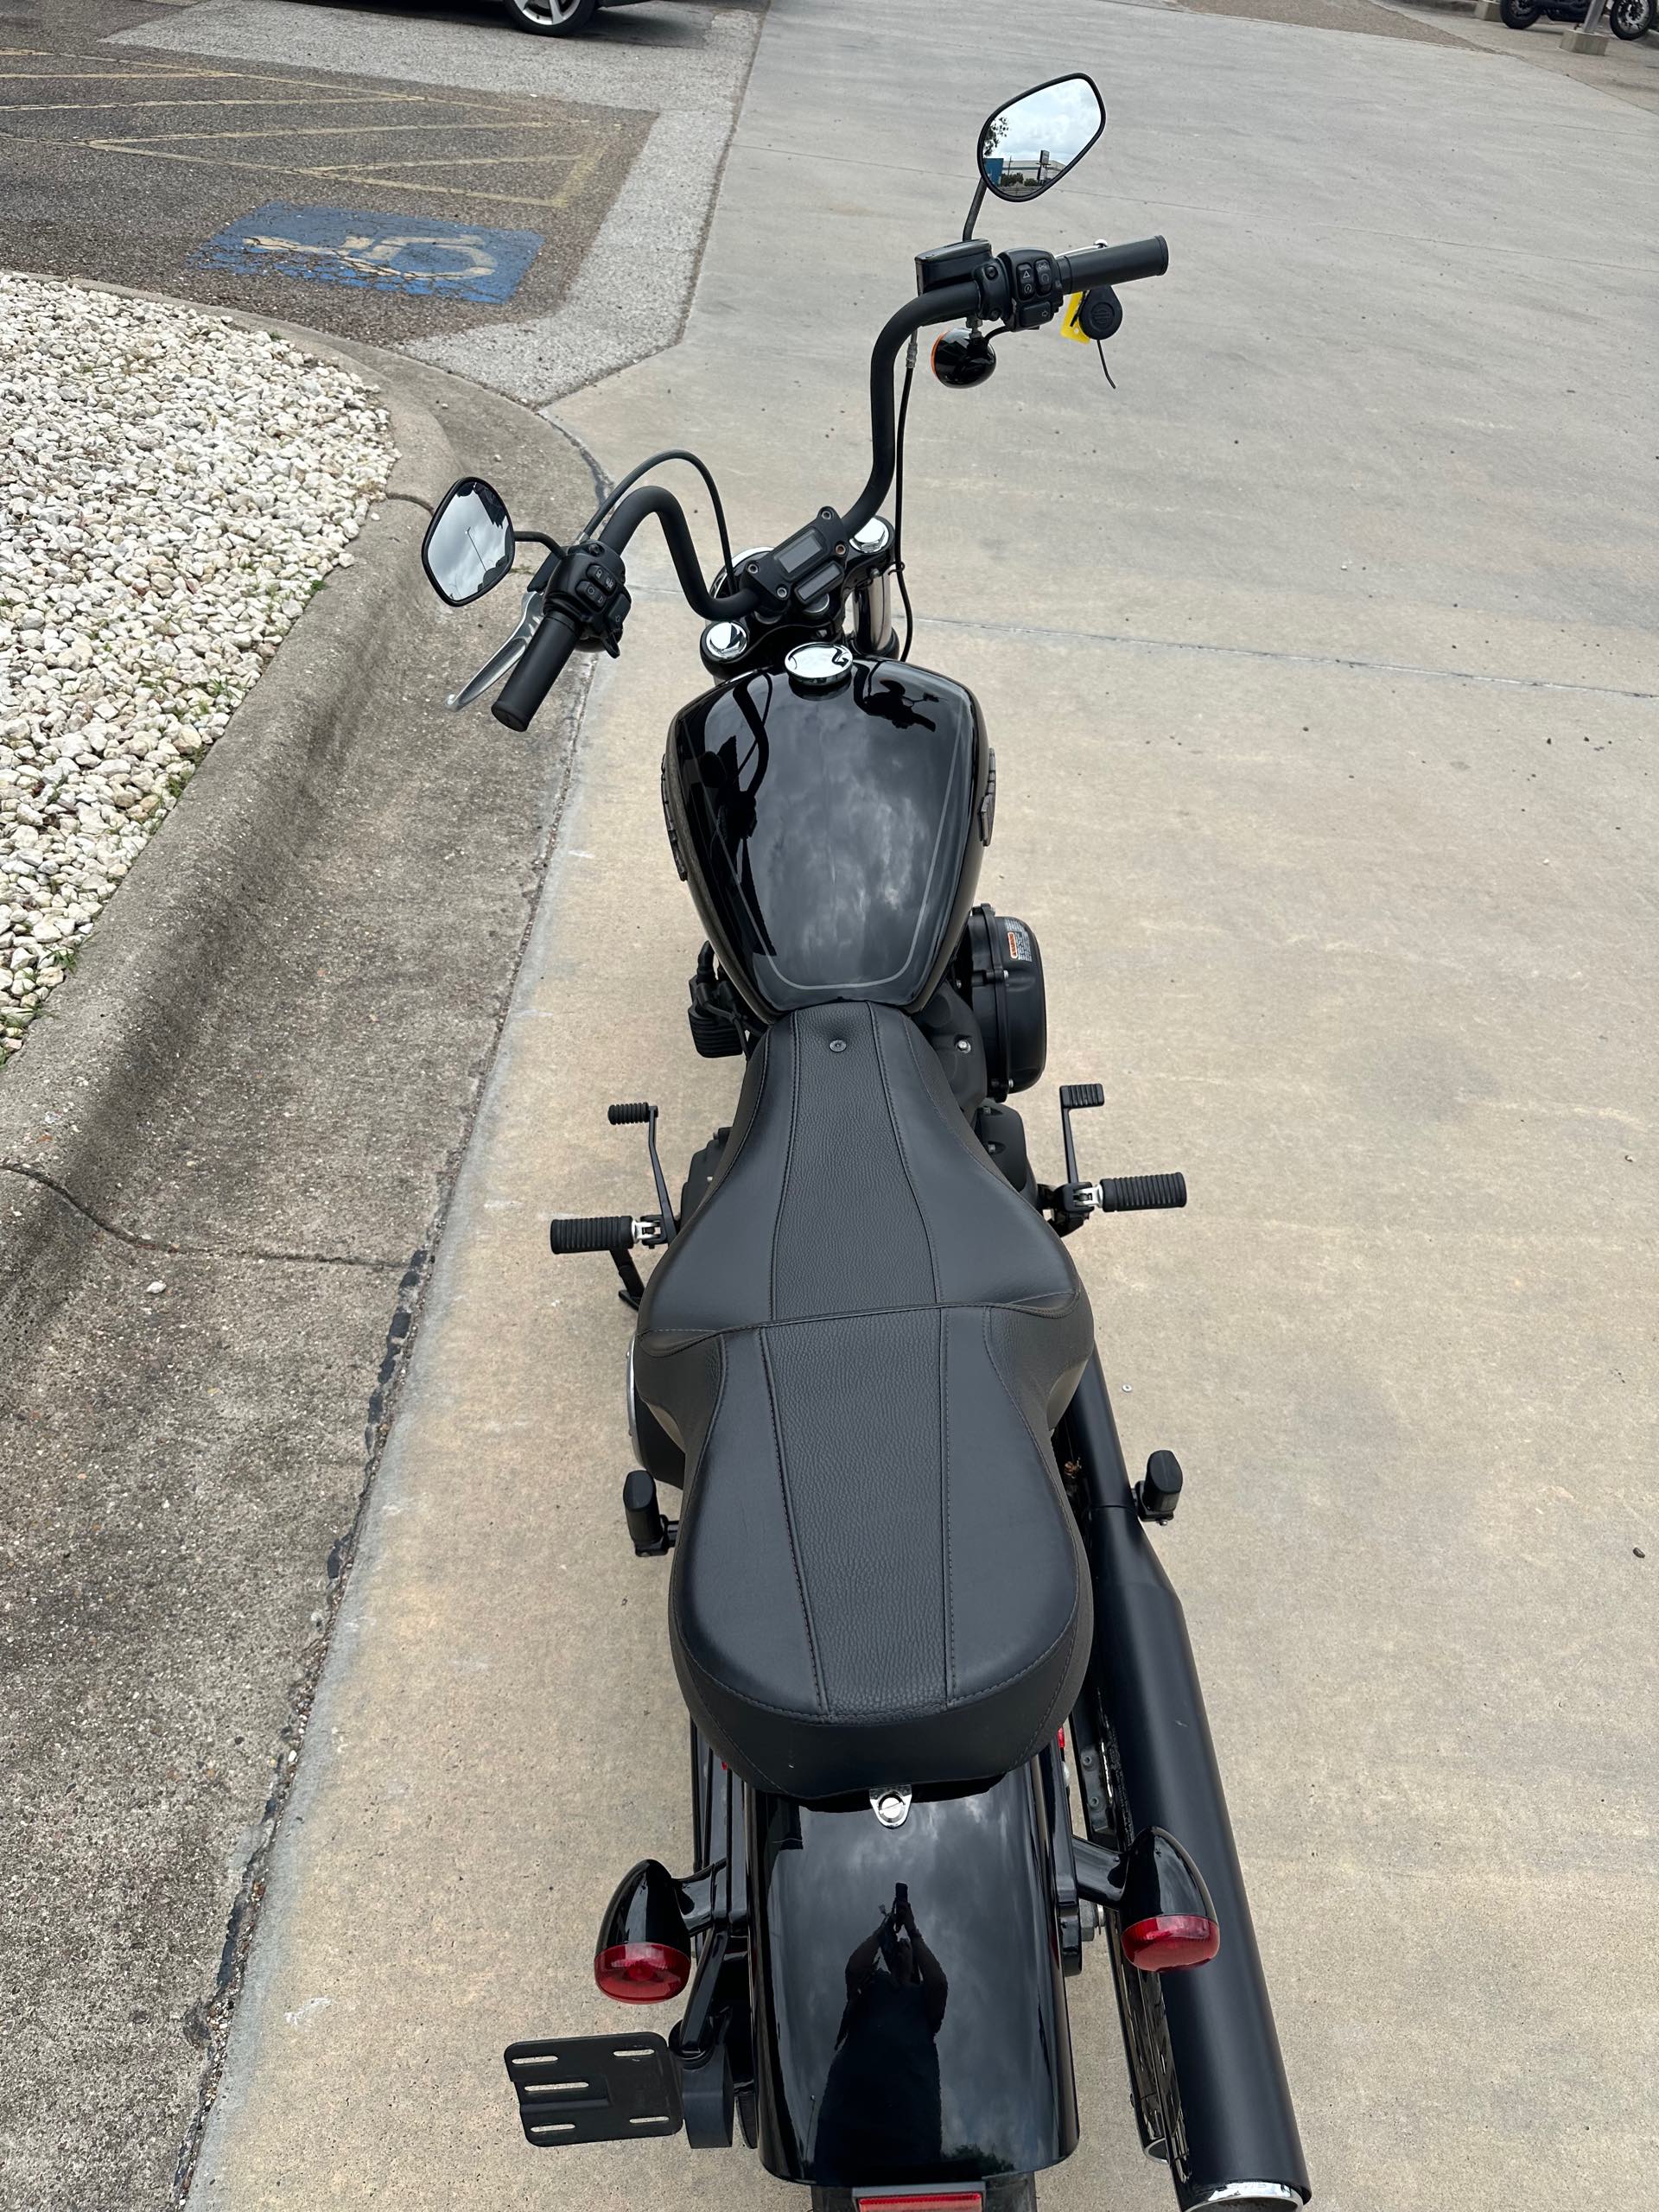 2019 Harley-Davidson Softail Street Bob at Corpus Christi Harley-Davidson